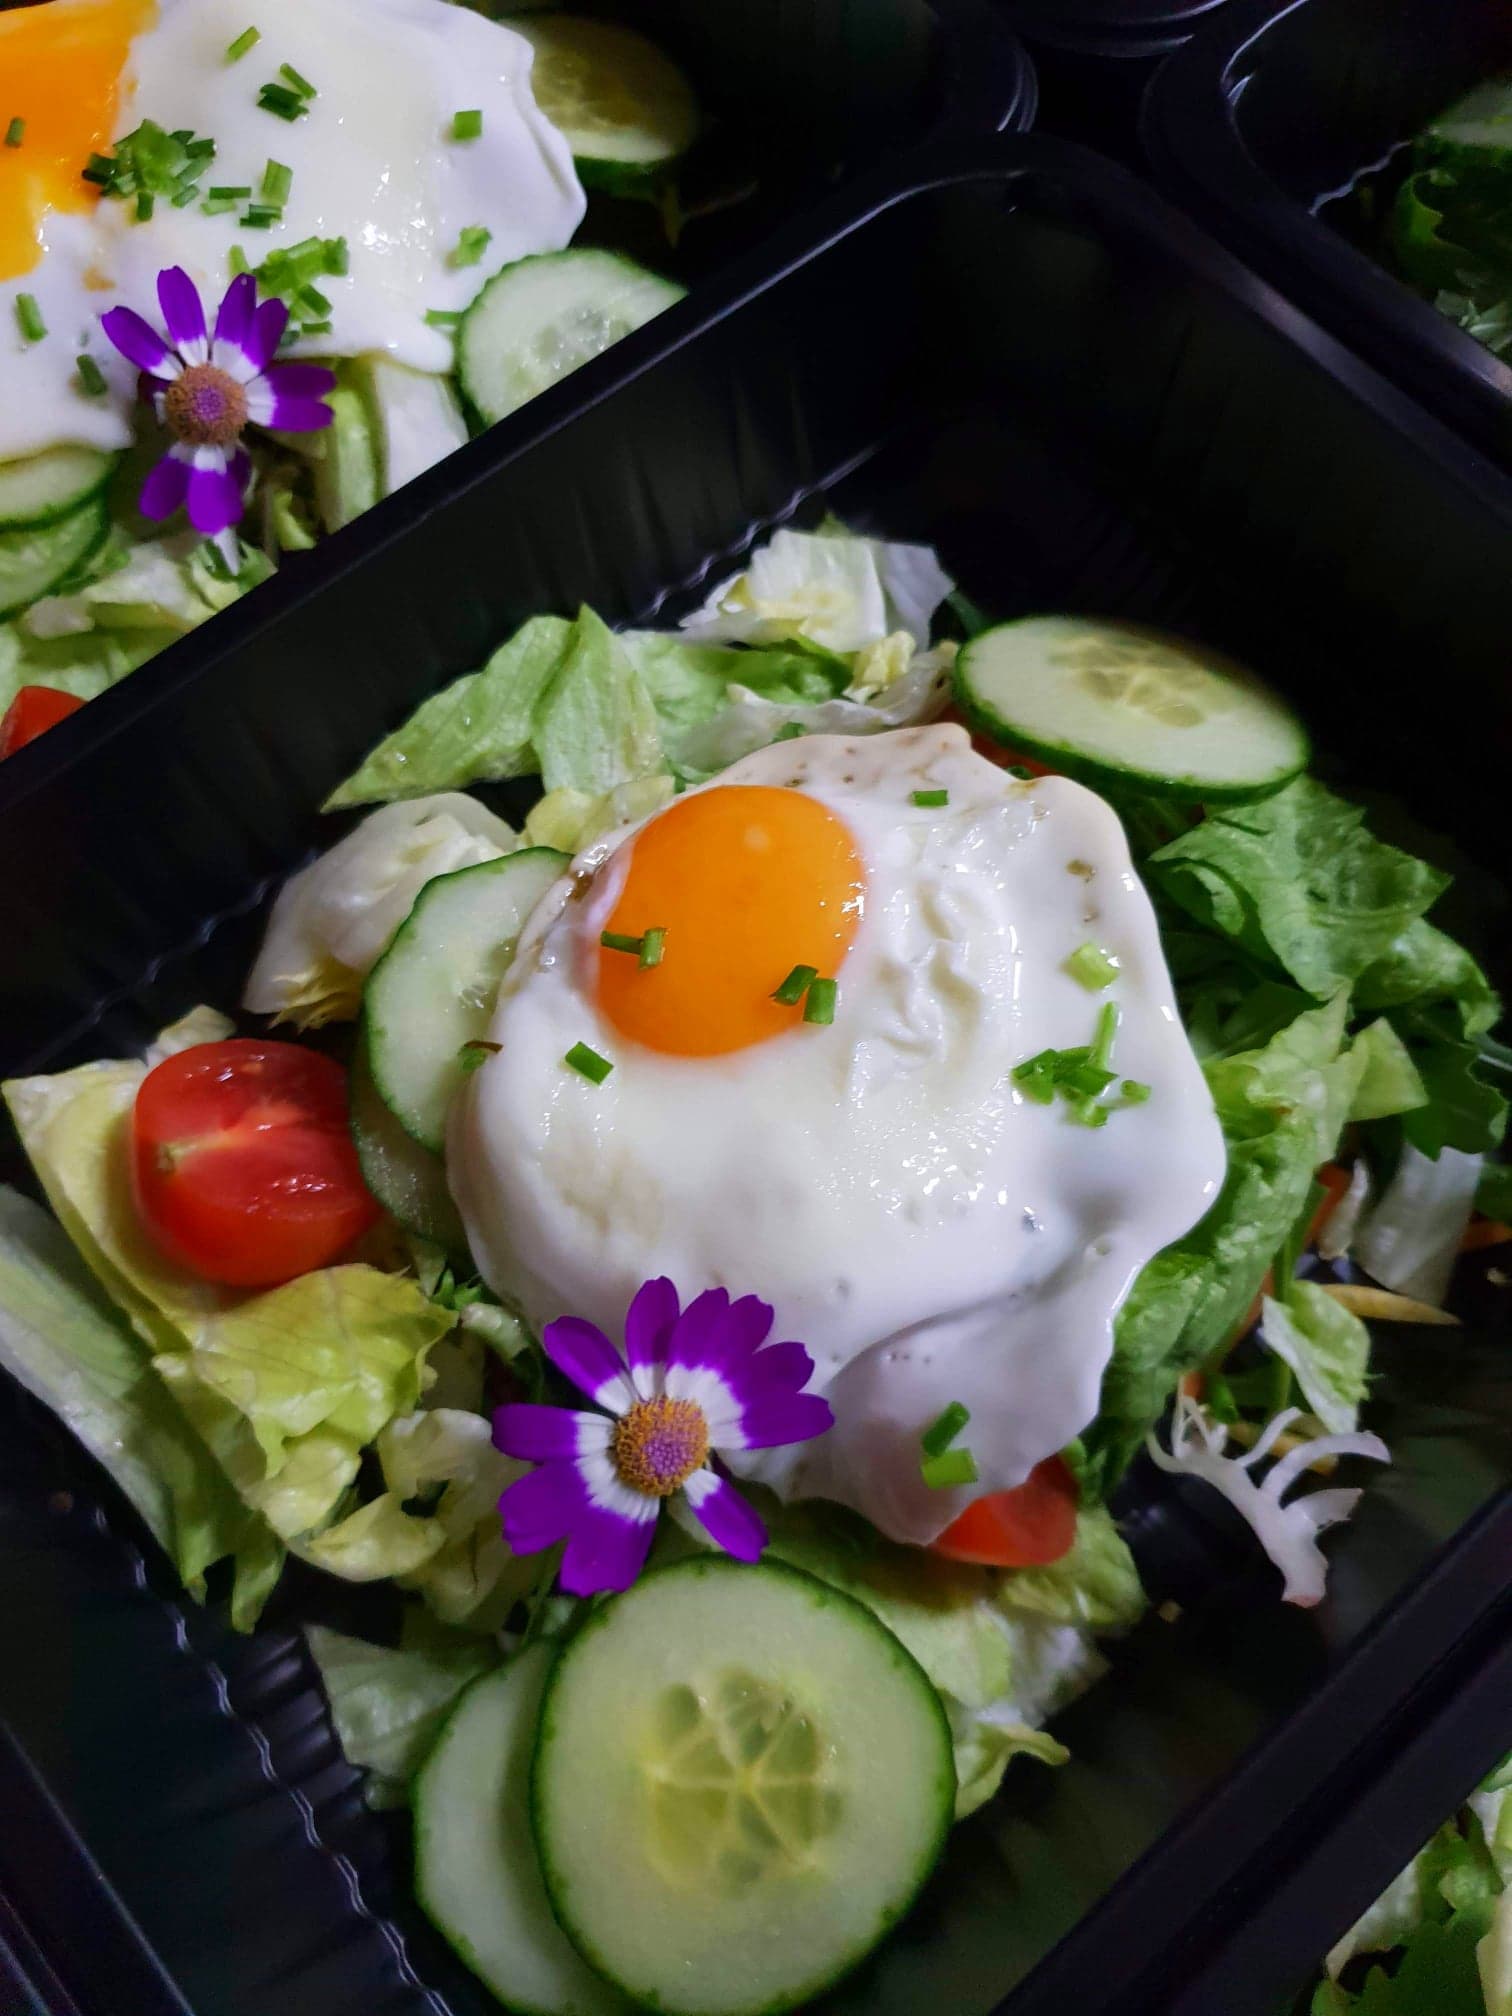 Dieta wege/paleo - Jajko sadzone, sałatka warzywna. Dieta pudełkowa z dowozem.